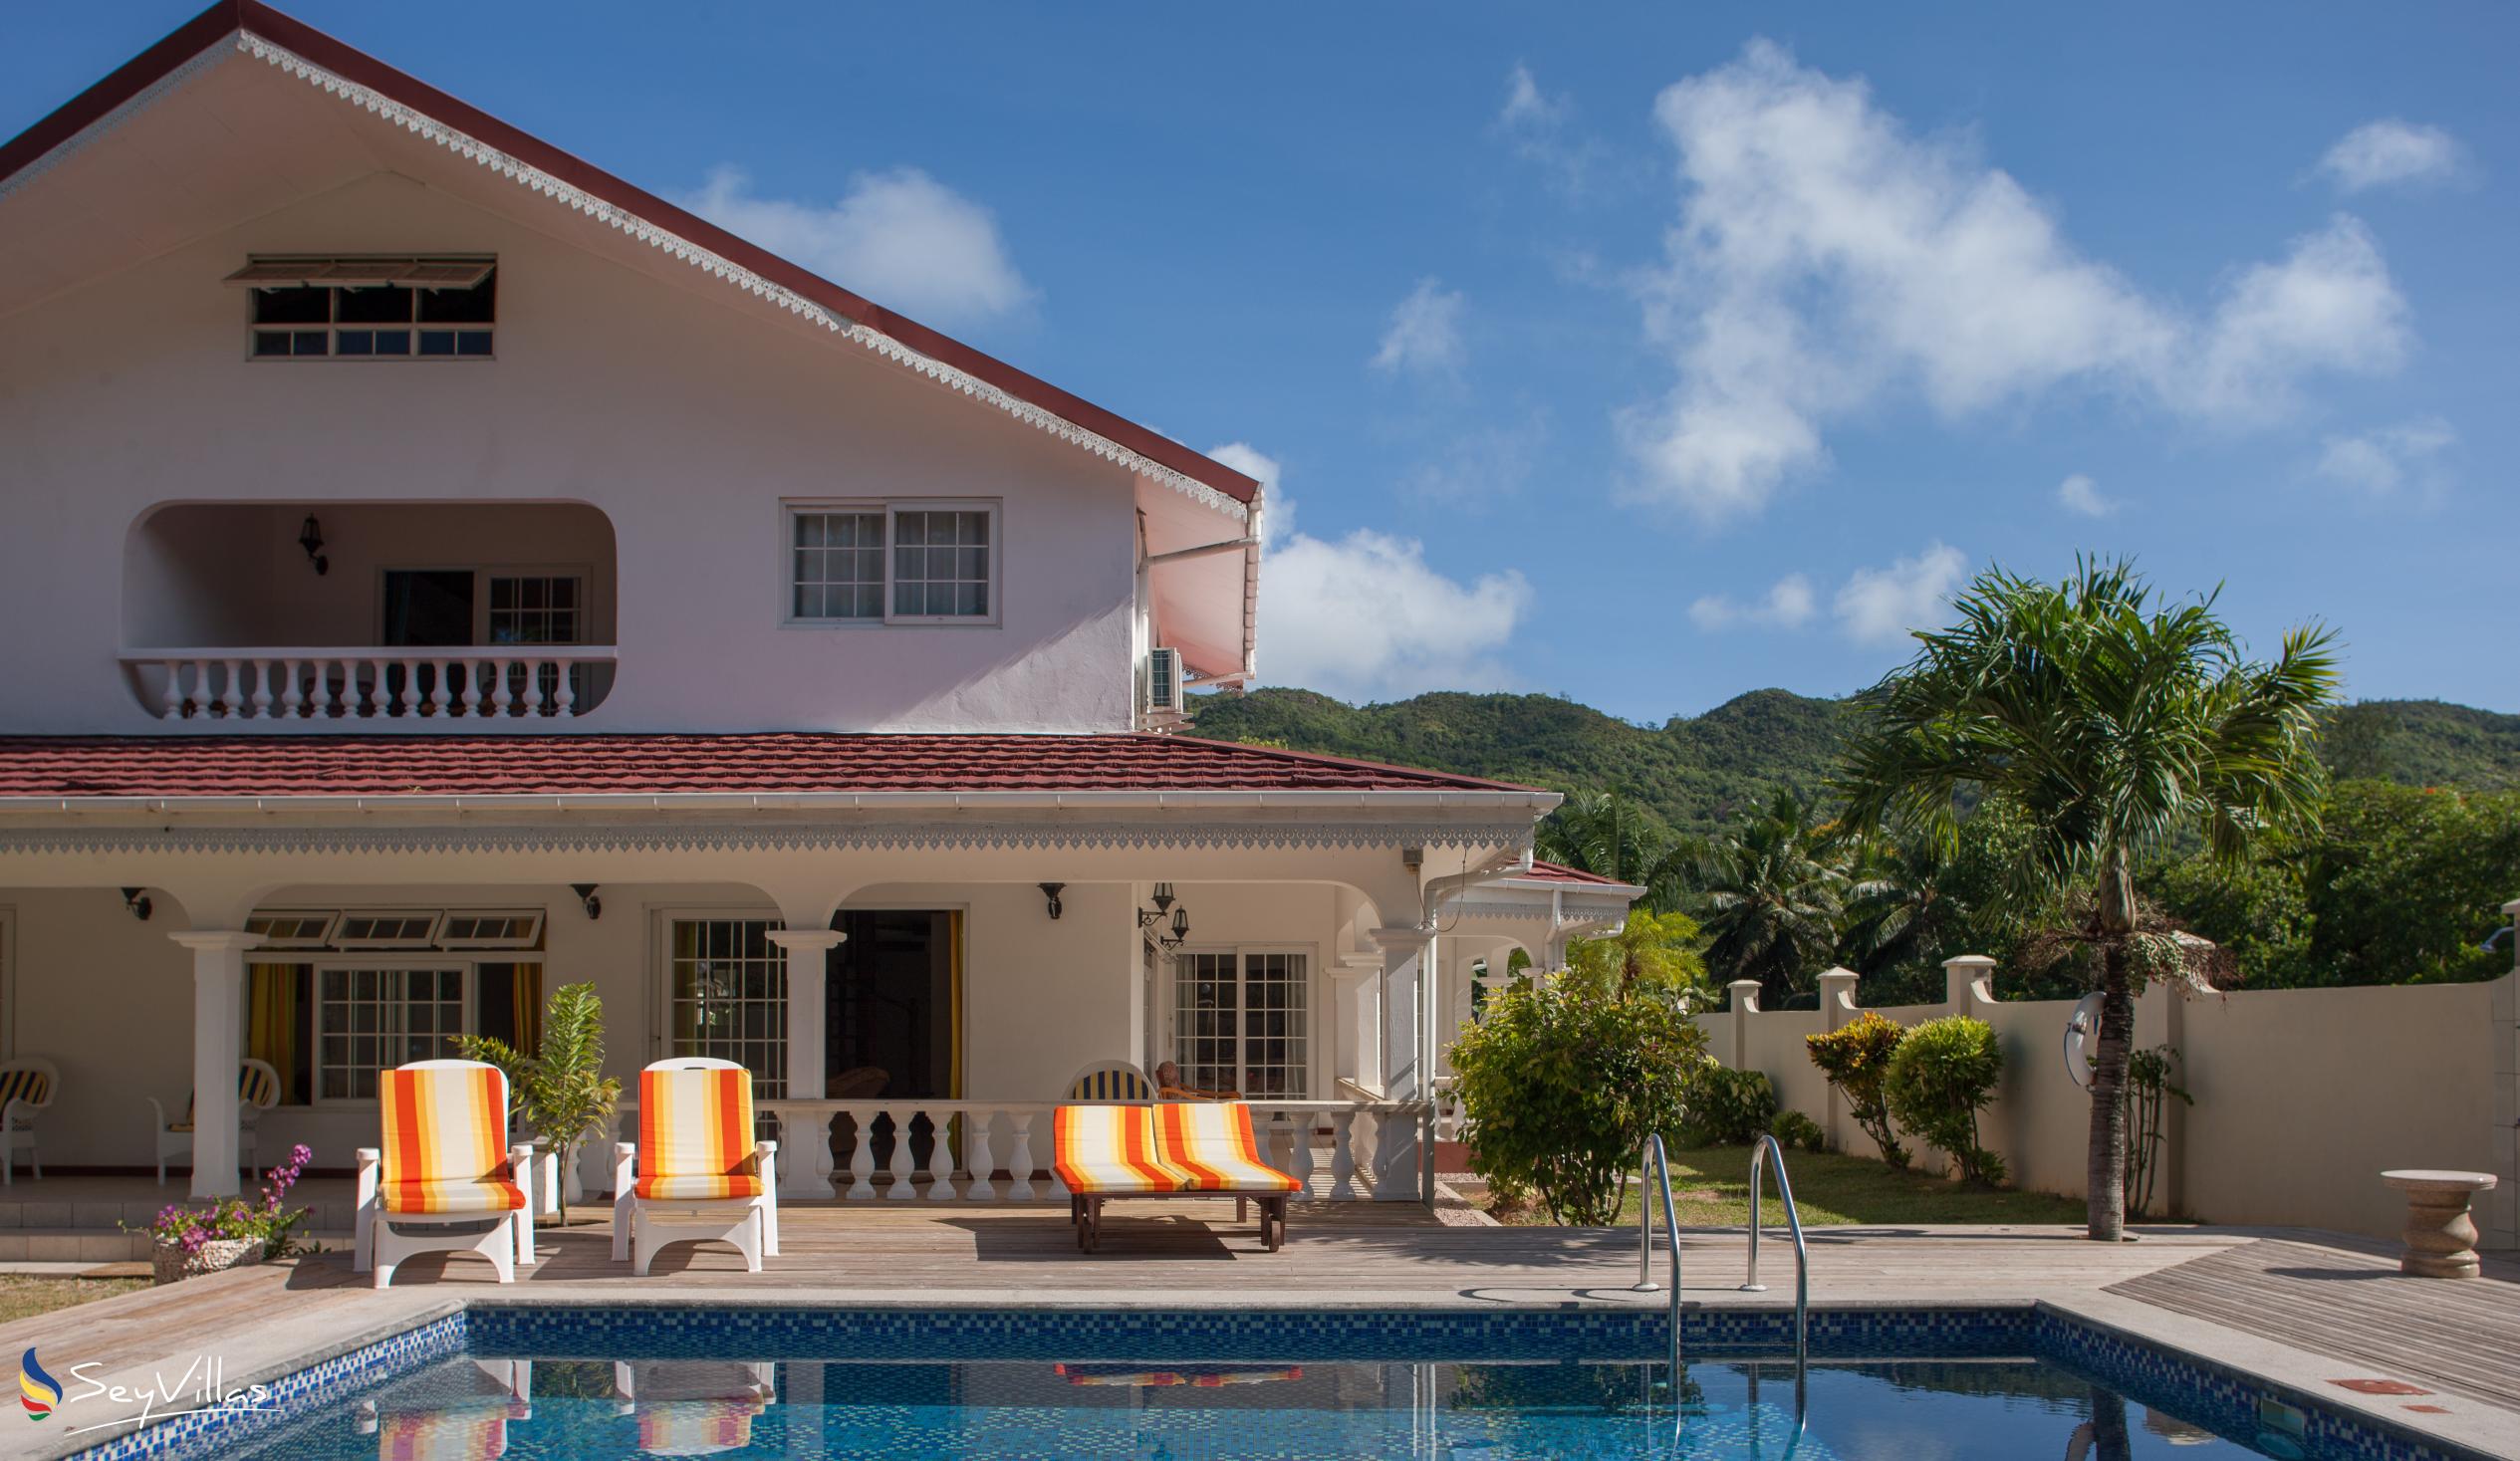 Foto 3: Villa Confort - Aussenbereich - Praslin (Seychellen)